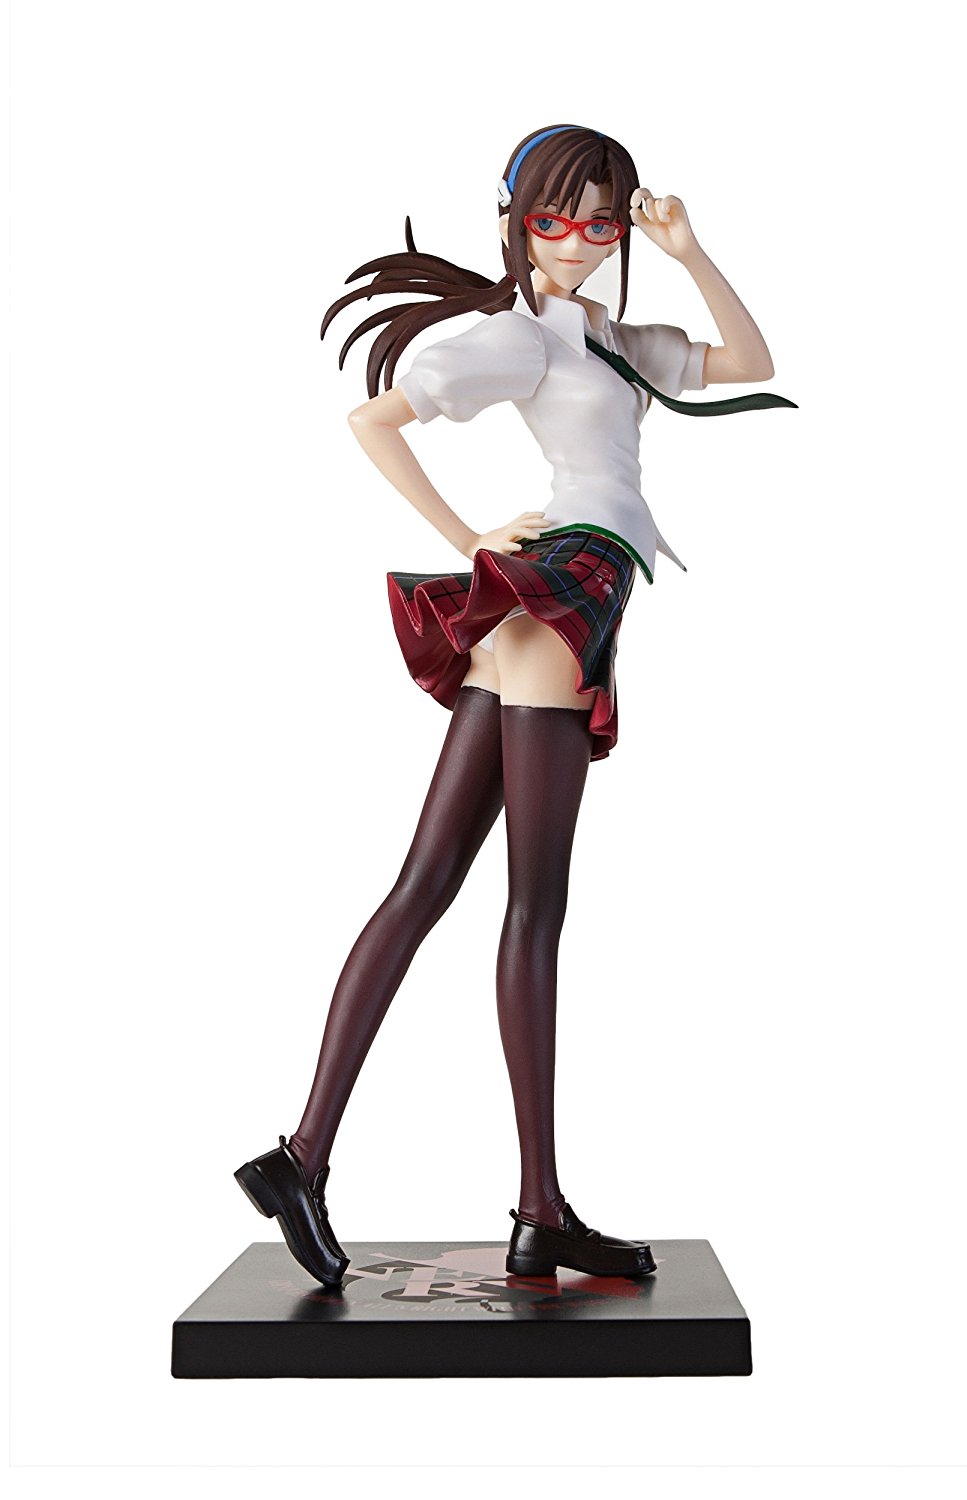 Makinami Mari Illustrious, Premium Uniform Figure, Evangelion Neon Genesis, 2015 20th Anniversary, Sega